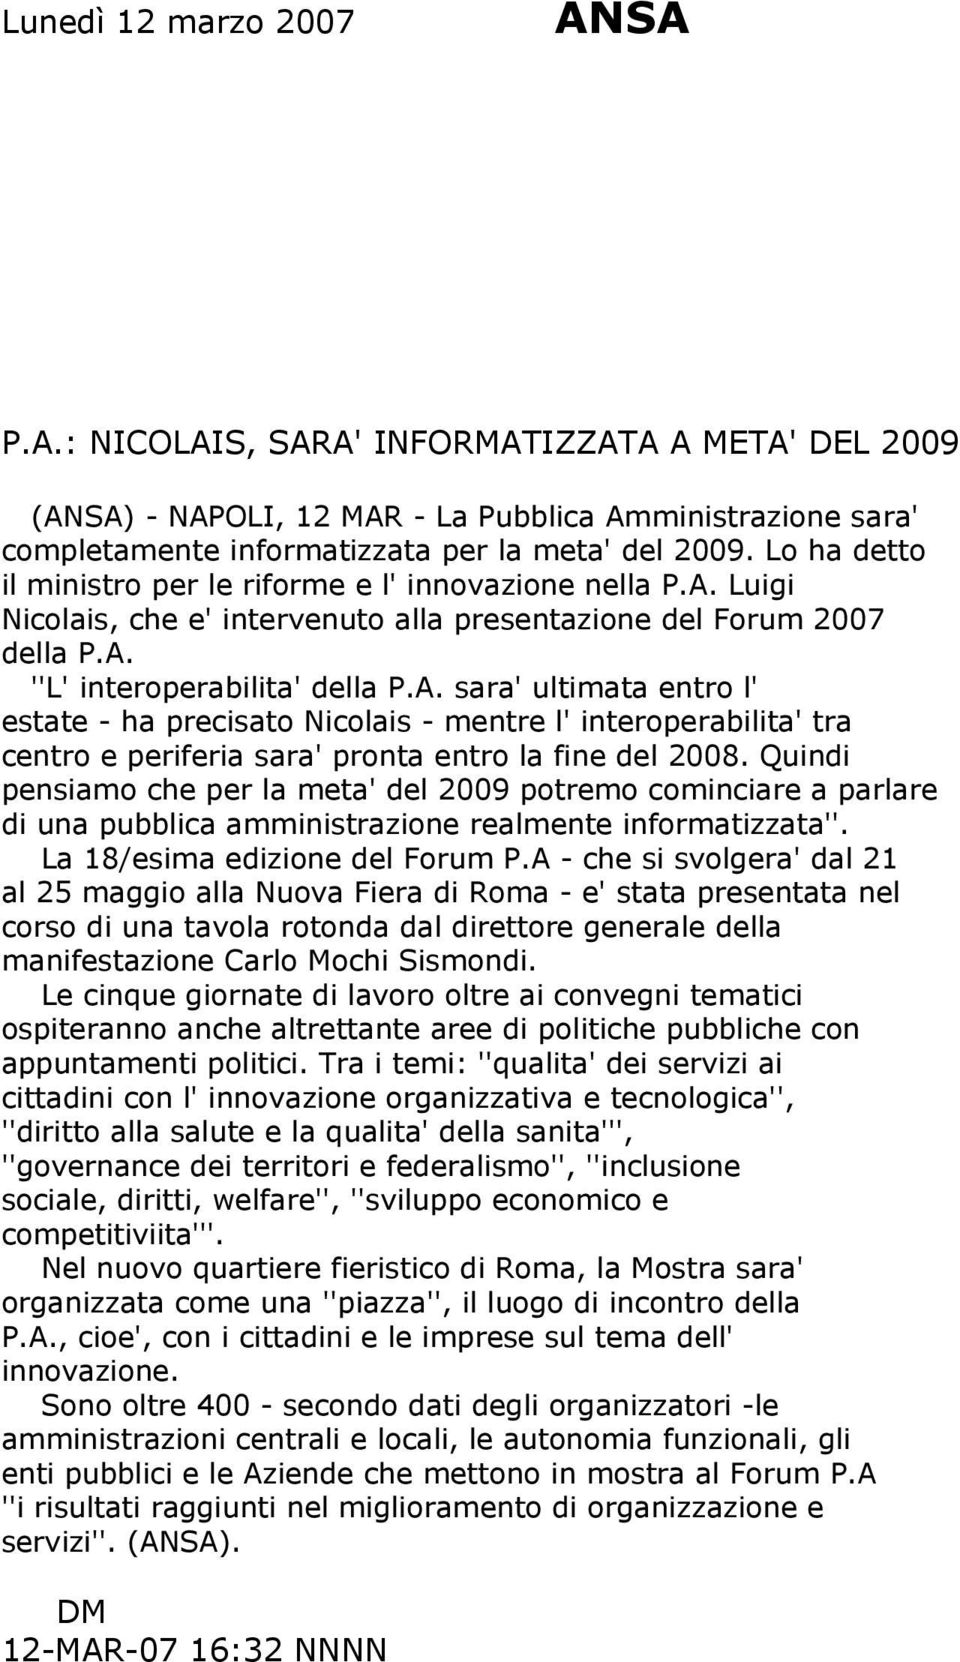 Luigi Nicolais, che e' intervenuto alla presentazione del Forum 2007 della P.A.